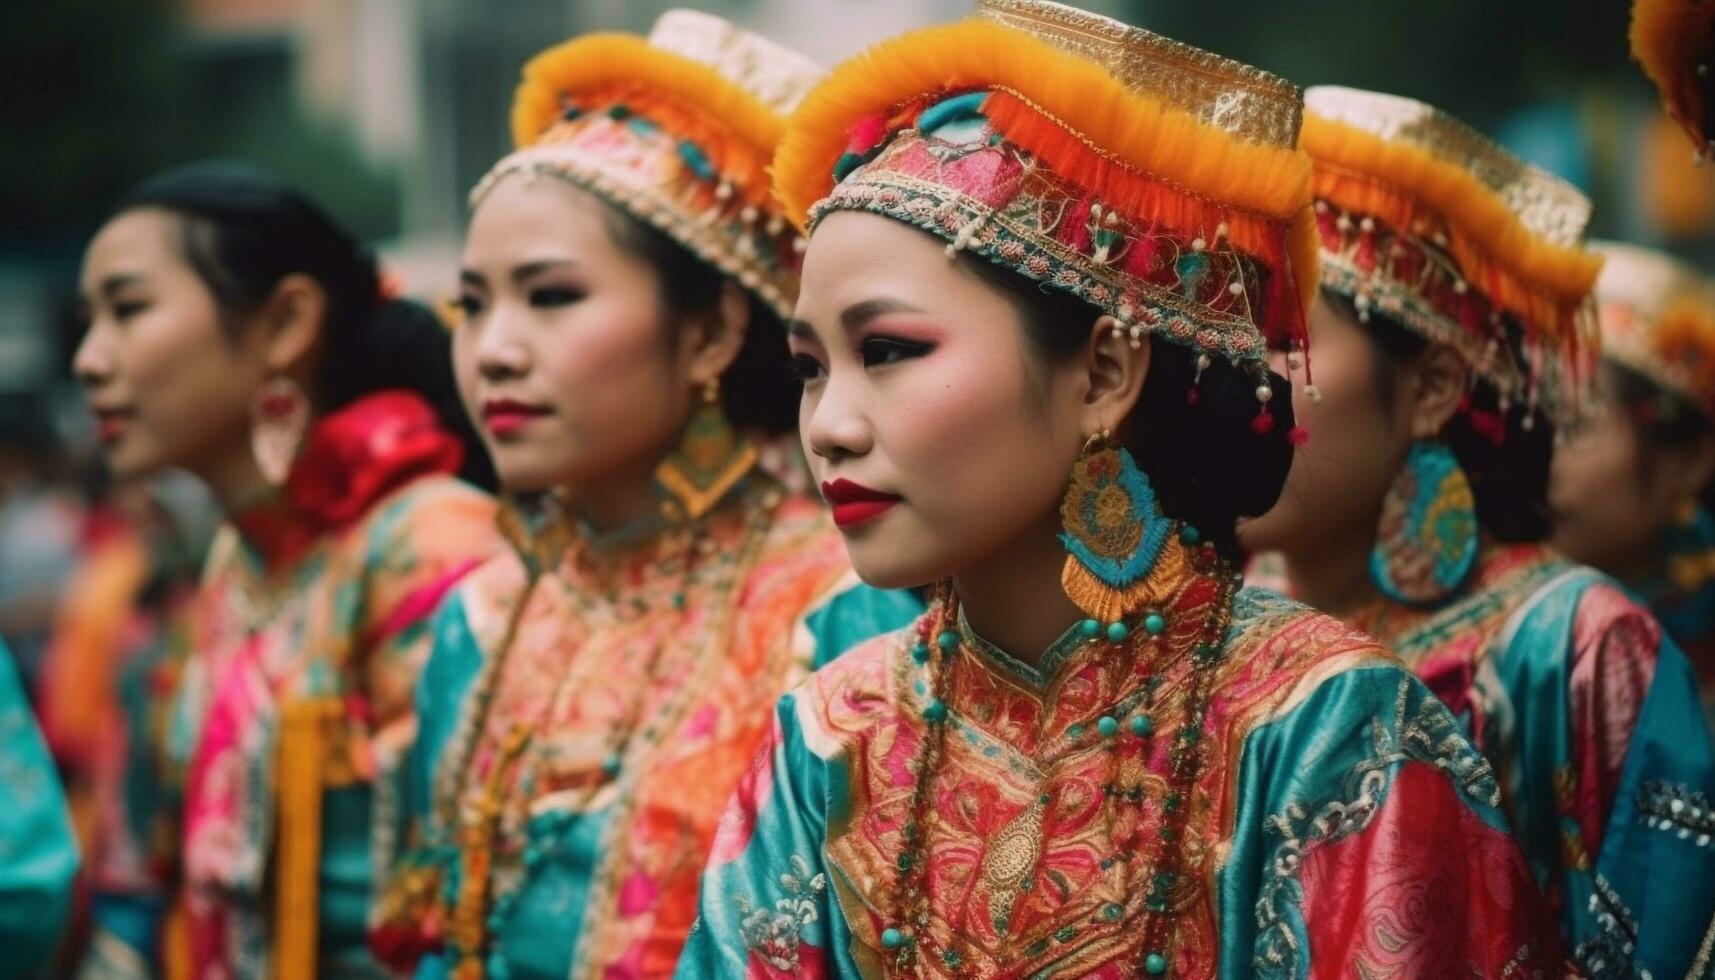 vistoso tradicional festival celebra indígena culturas con bailando y elegancia generado por ai foto